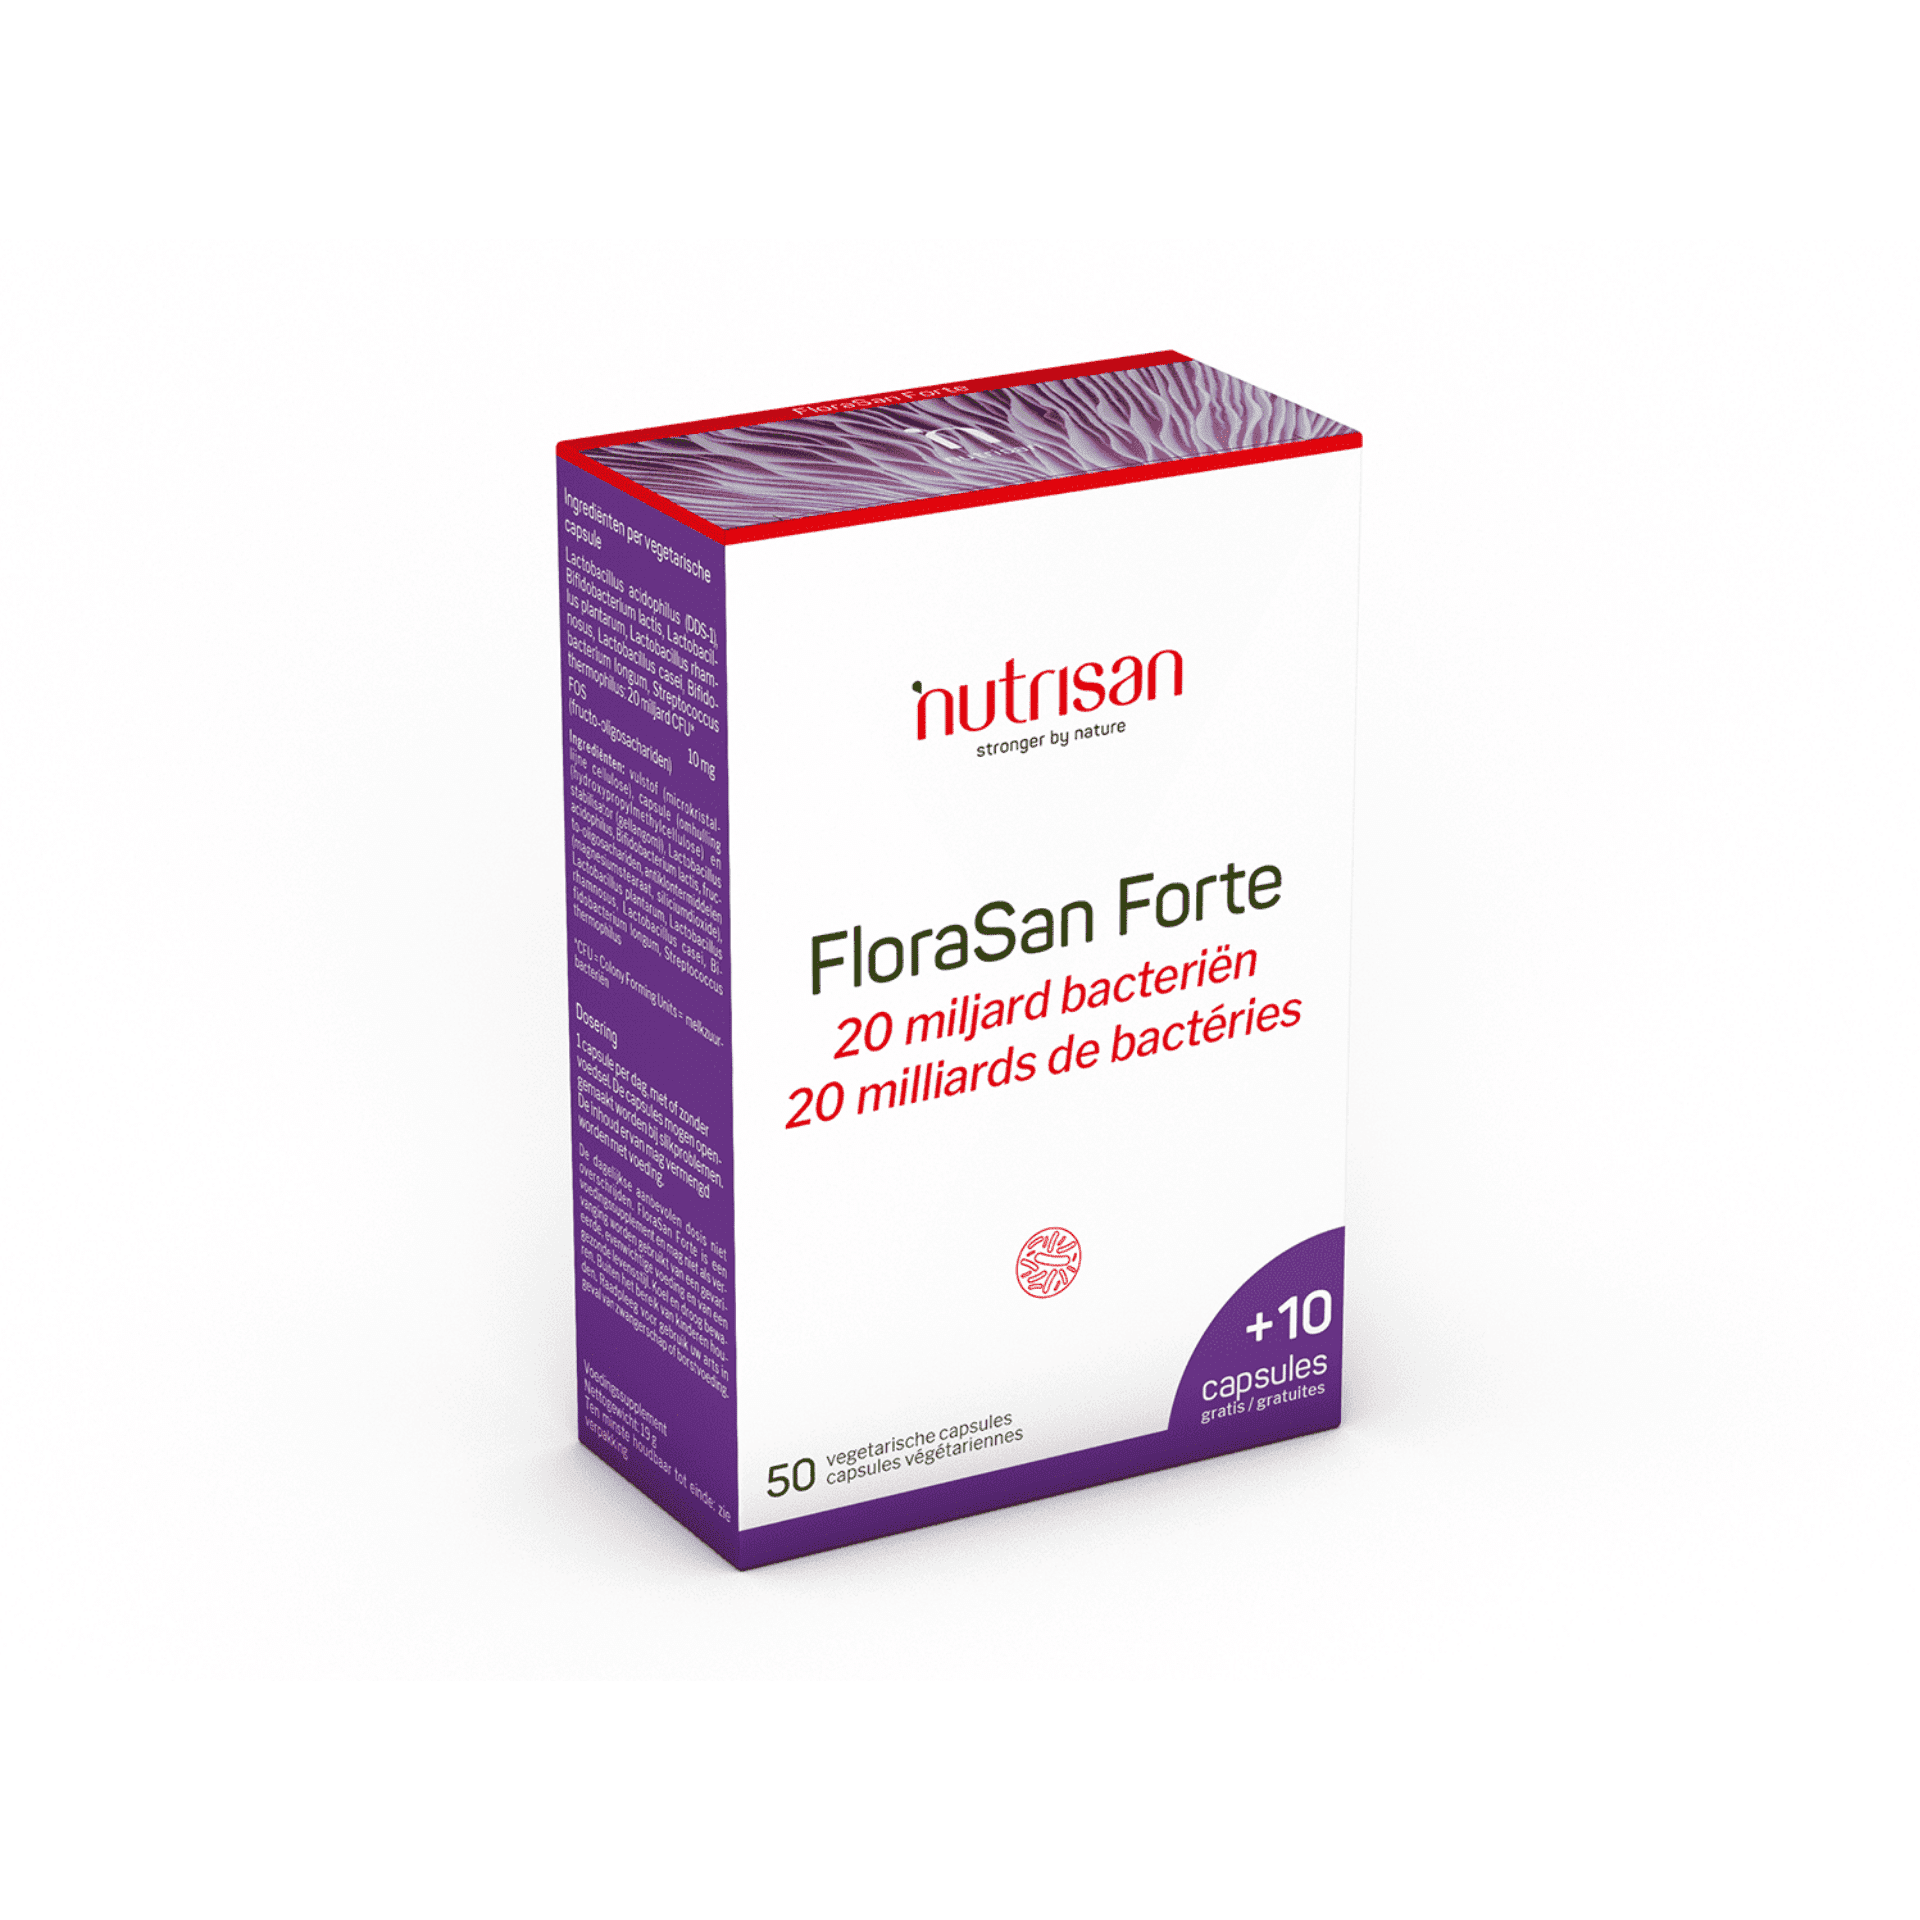 Nutrisan FloraSan Forte 50 + 10 capsules gratis